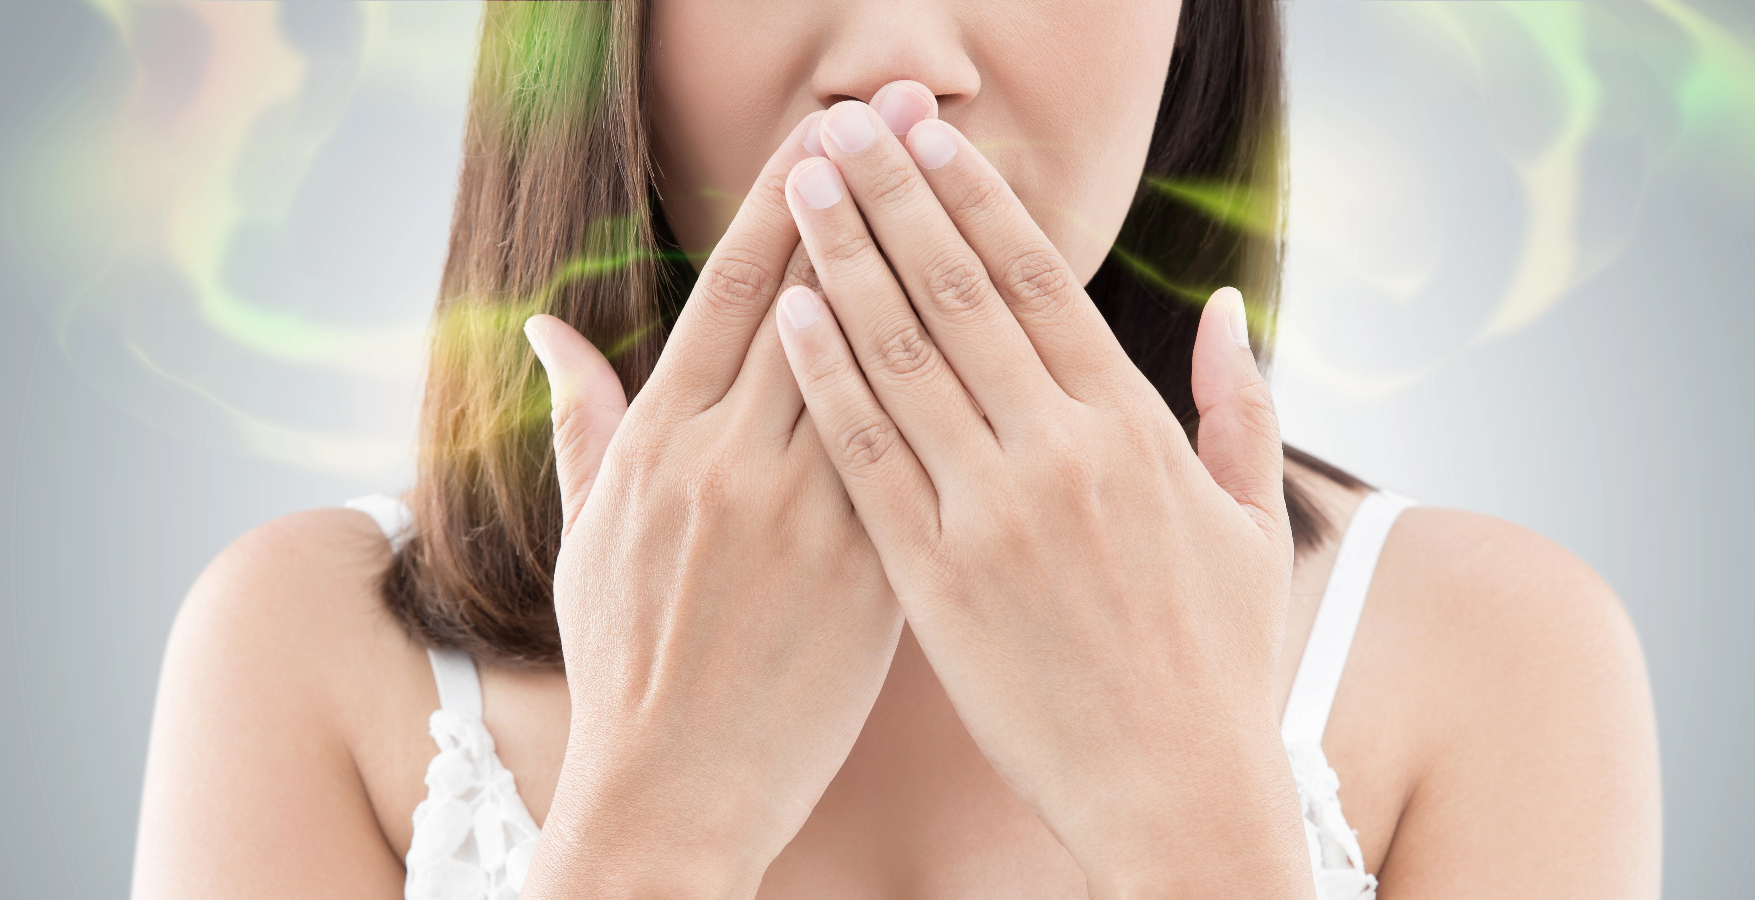 Mundgeruch ist ein wichtiger Indikator für die Diagnose von Diabetes